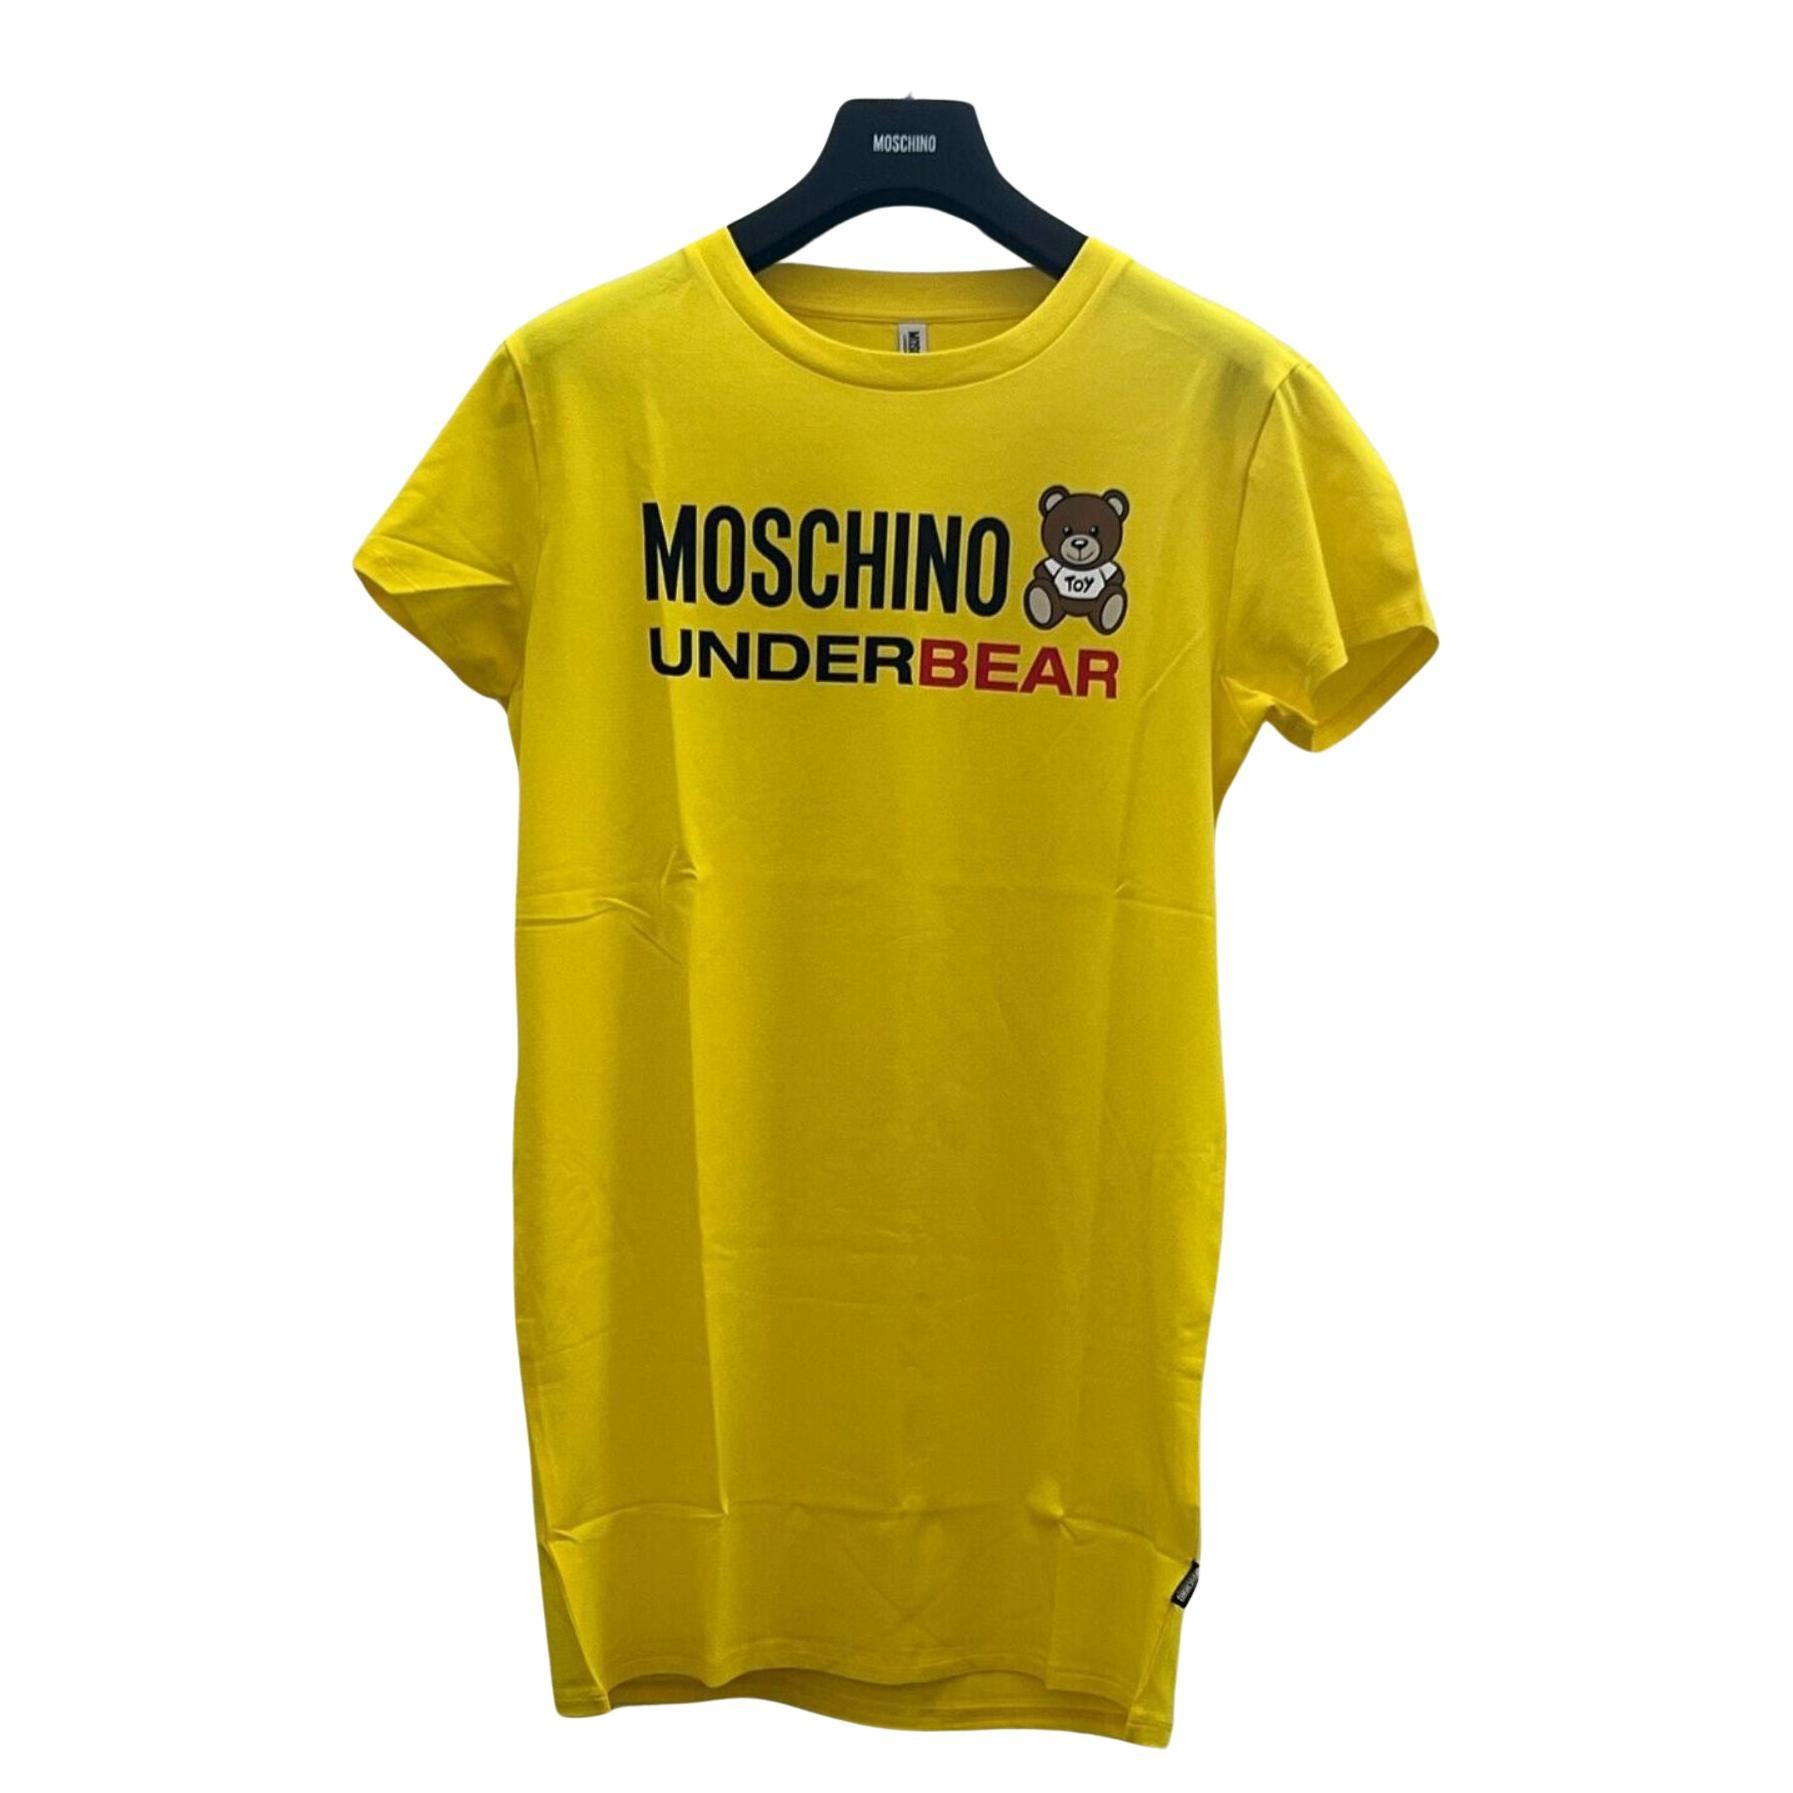 AW20 Moschino Underwear Underbear Teddy Bear T-shirt by Jeremy Scott, Size S For Sale